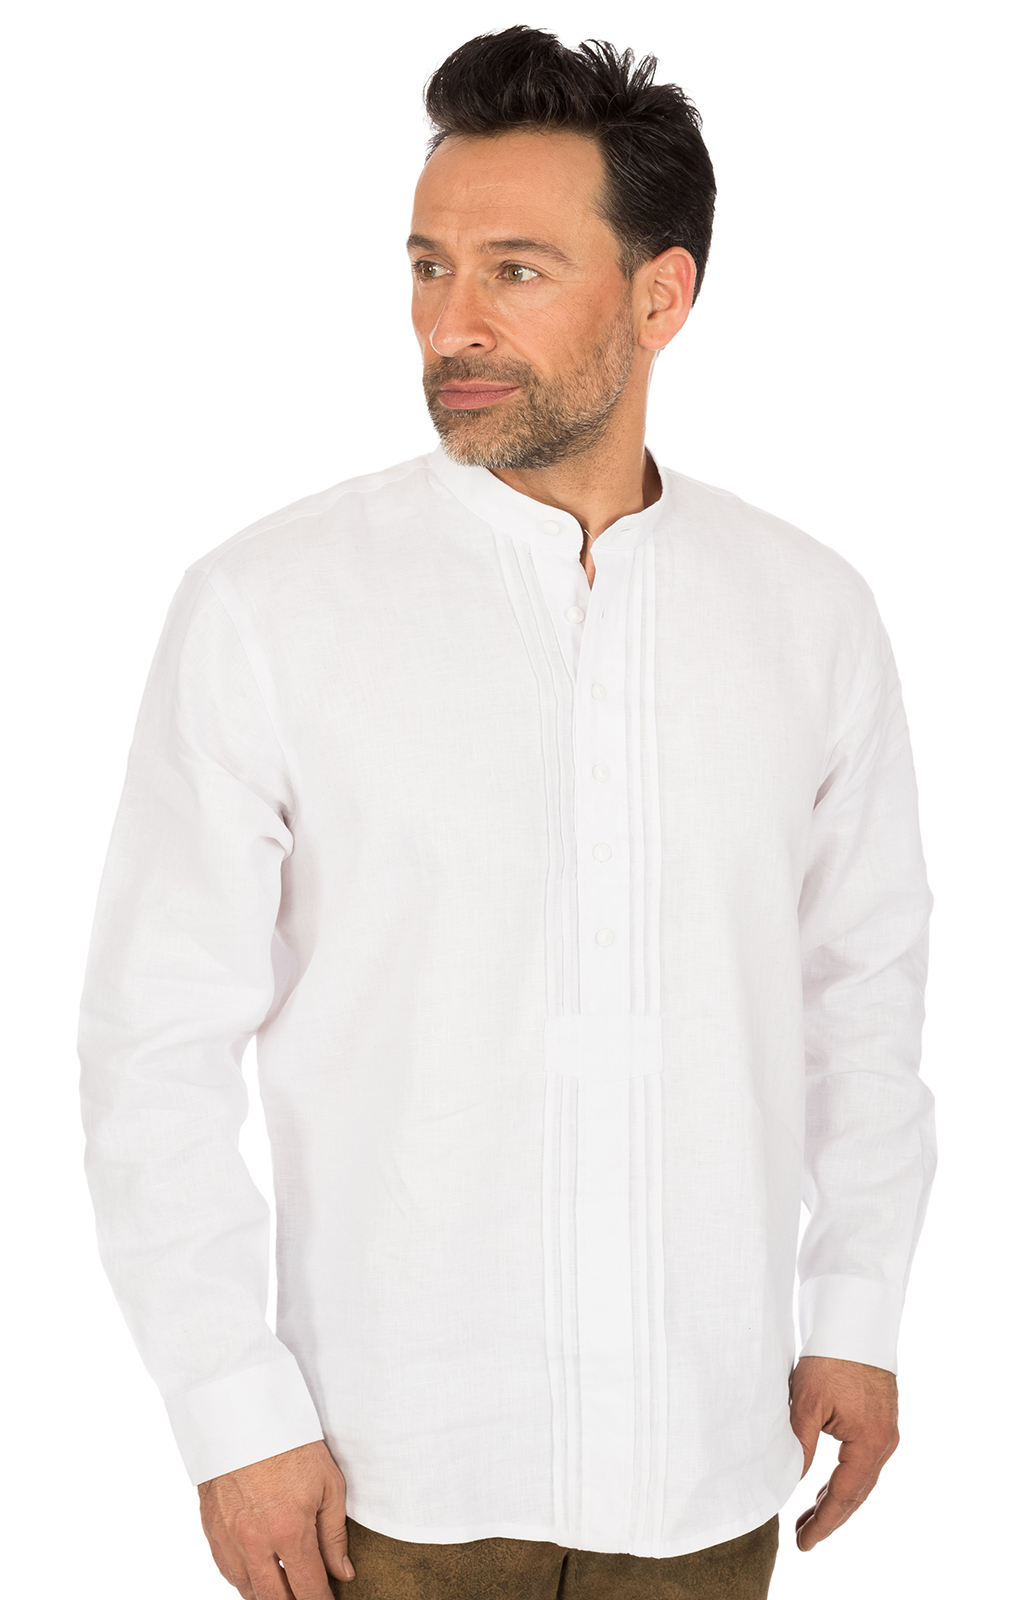 German traditional shirt Pfoad white von OS-Trachten